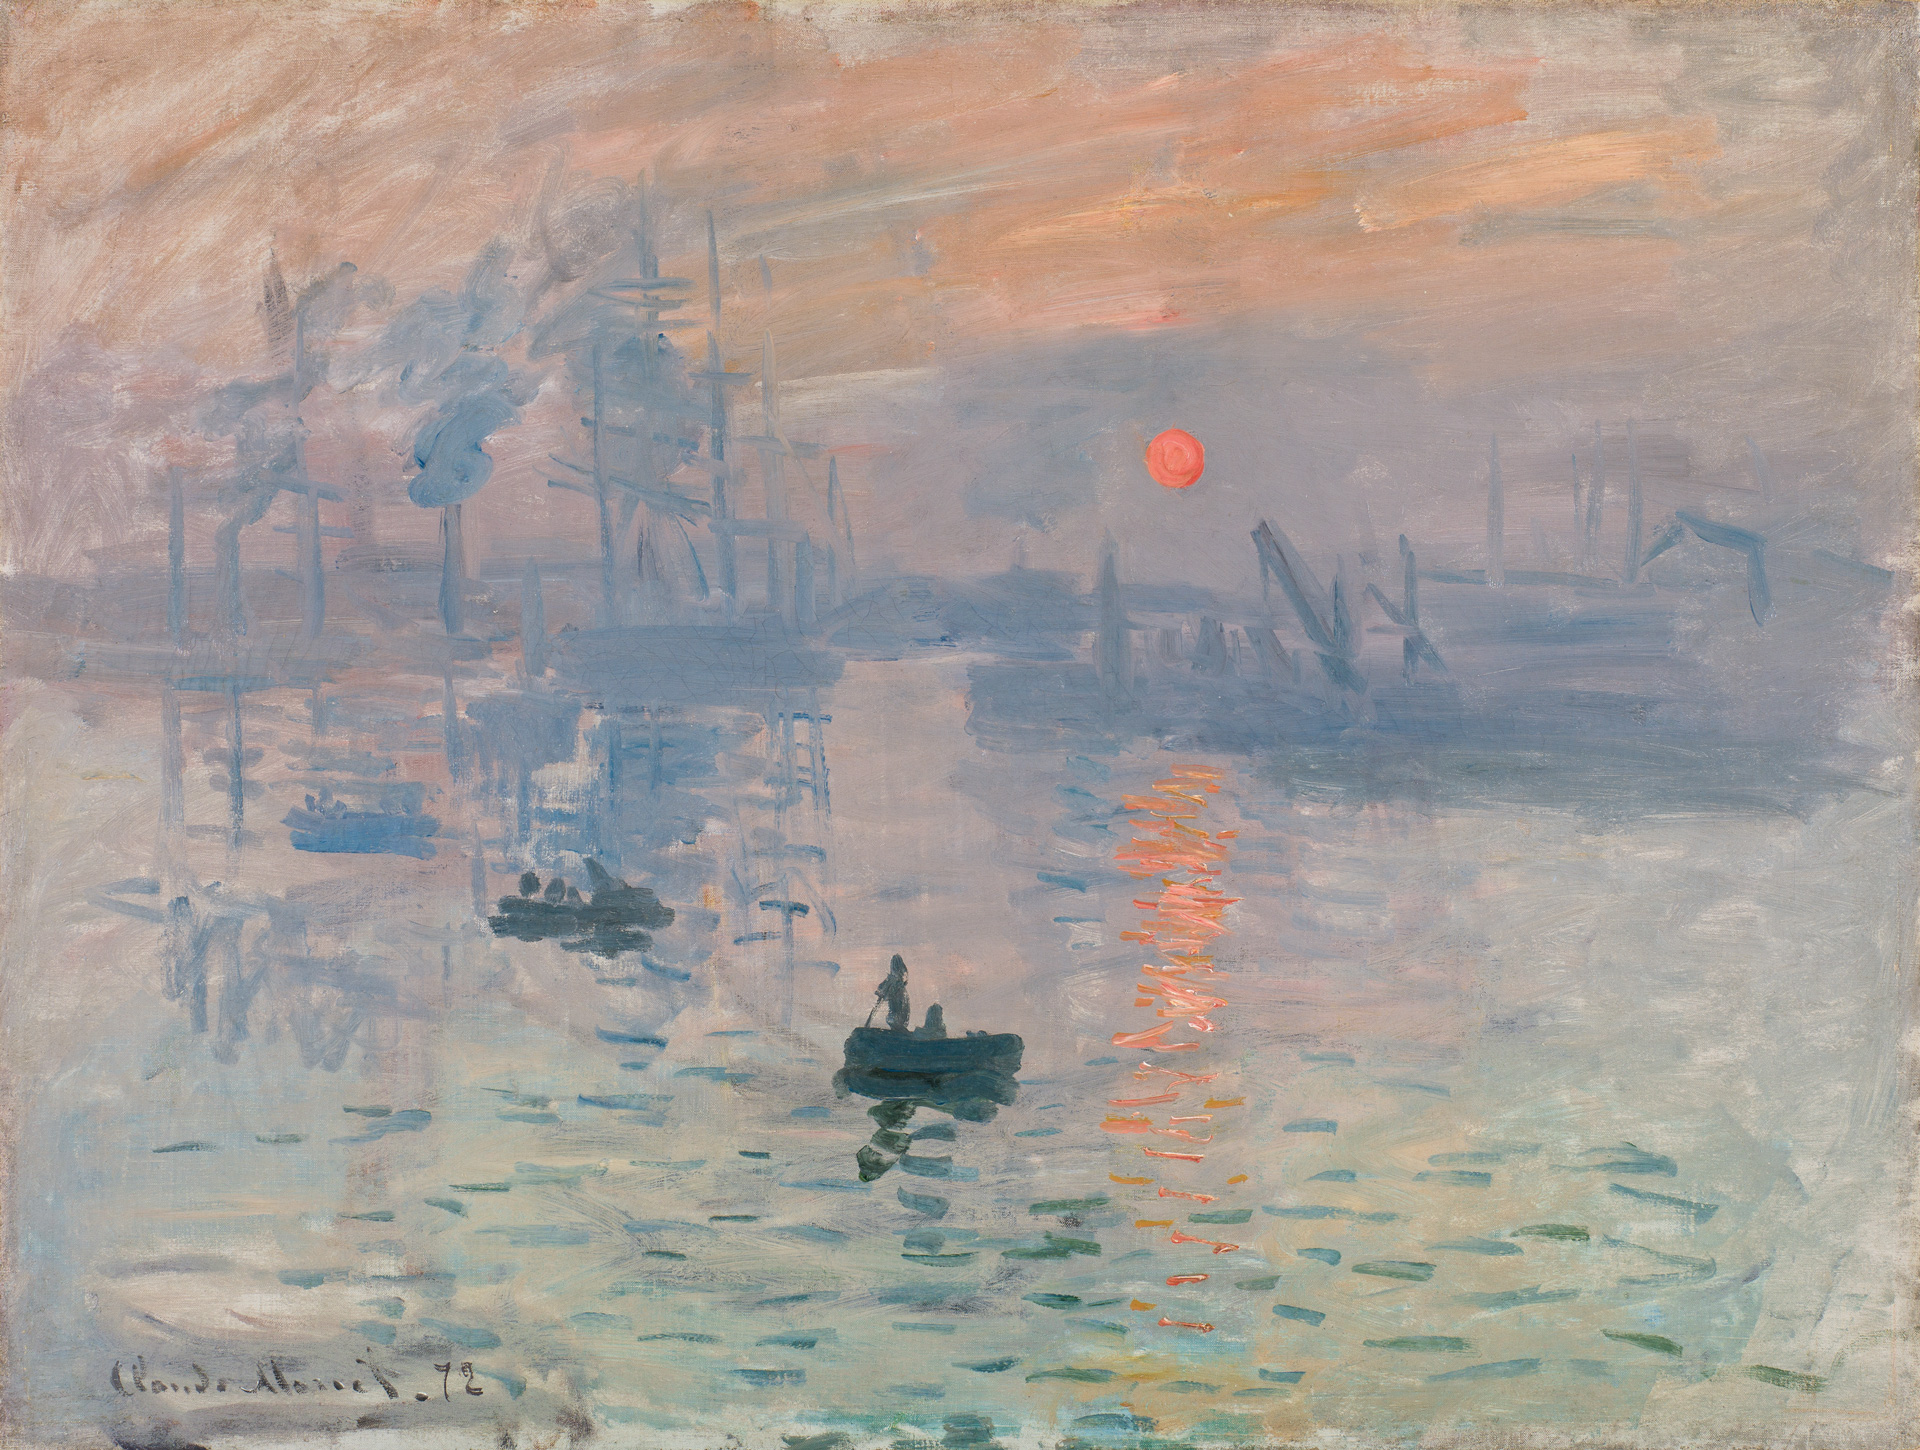 Claude Monet, "Impression, soleil levant", Le Havre